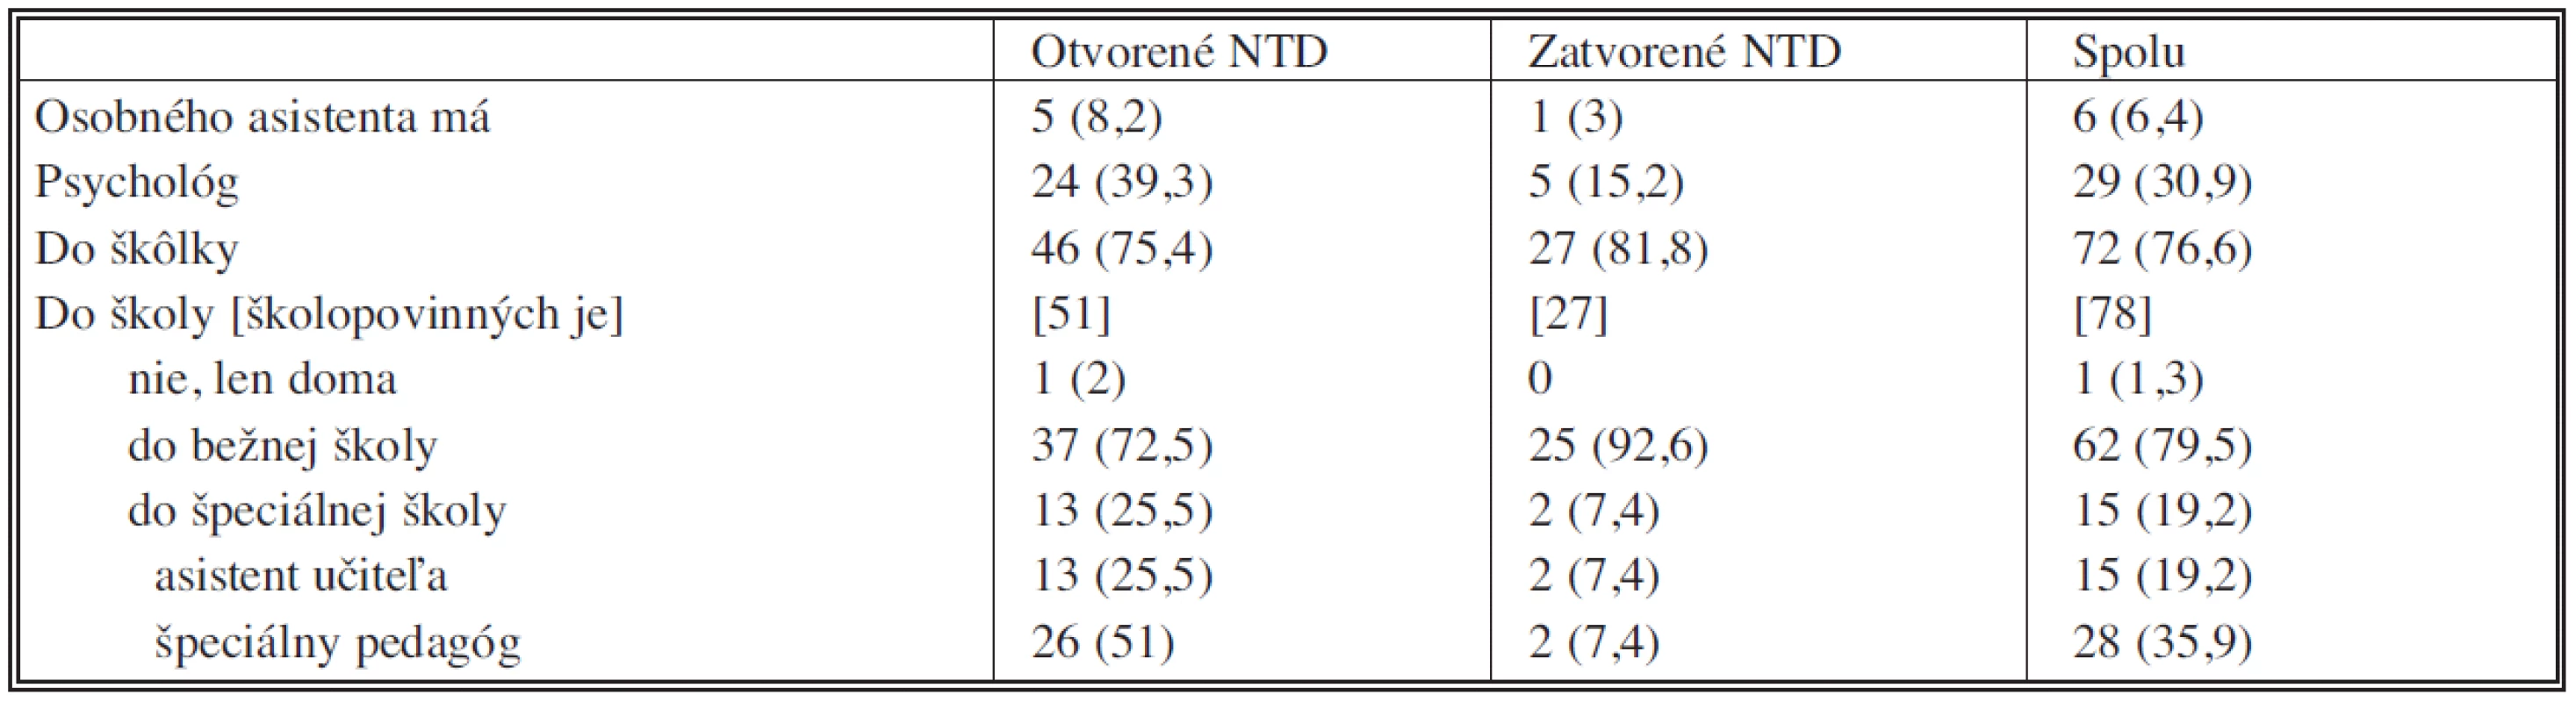 Sociálna anamnéza pacientov s defektami neurálnej rúry (NTD)
Tab. 4. Social amnesia in patients with neural tube defects (NTD)